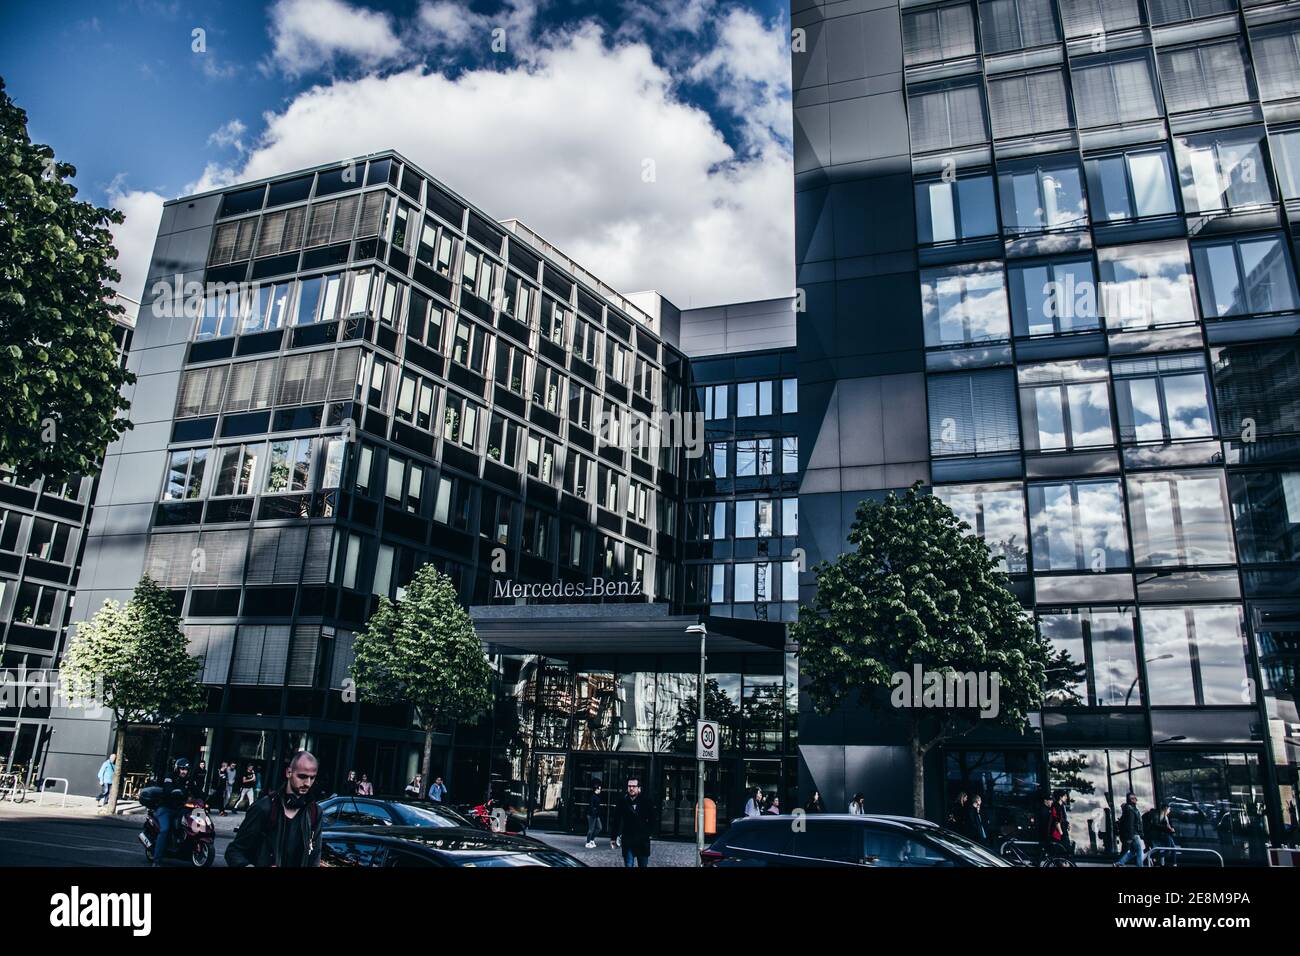 14 Mai 2019 Berlin, Deutschland - Moderne Architektur Gebäude aus Glas und Metall in Berlin. Mercedes Benz Büroturm. Stockfoto